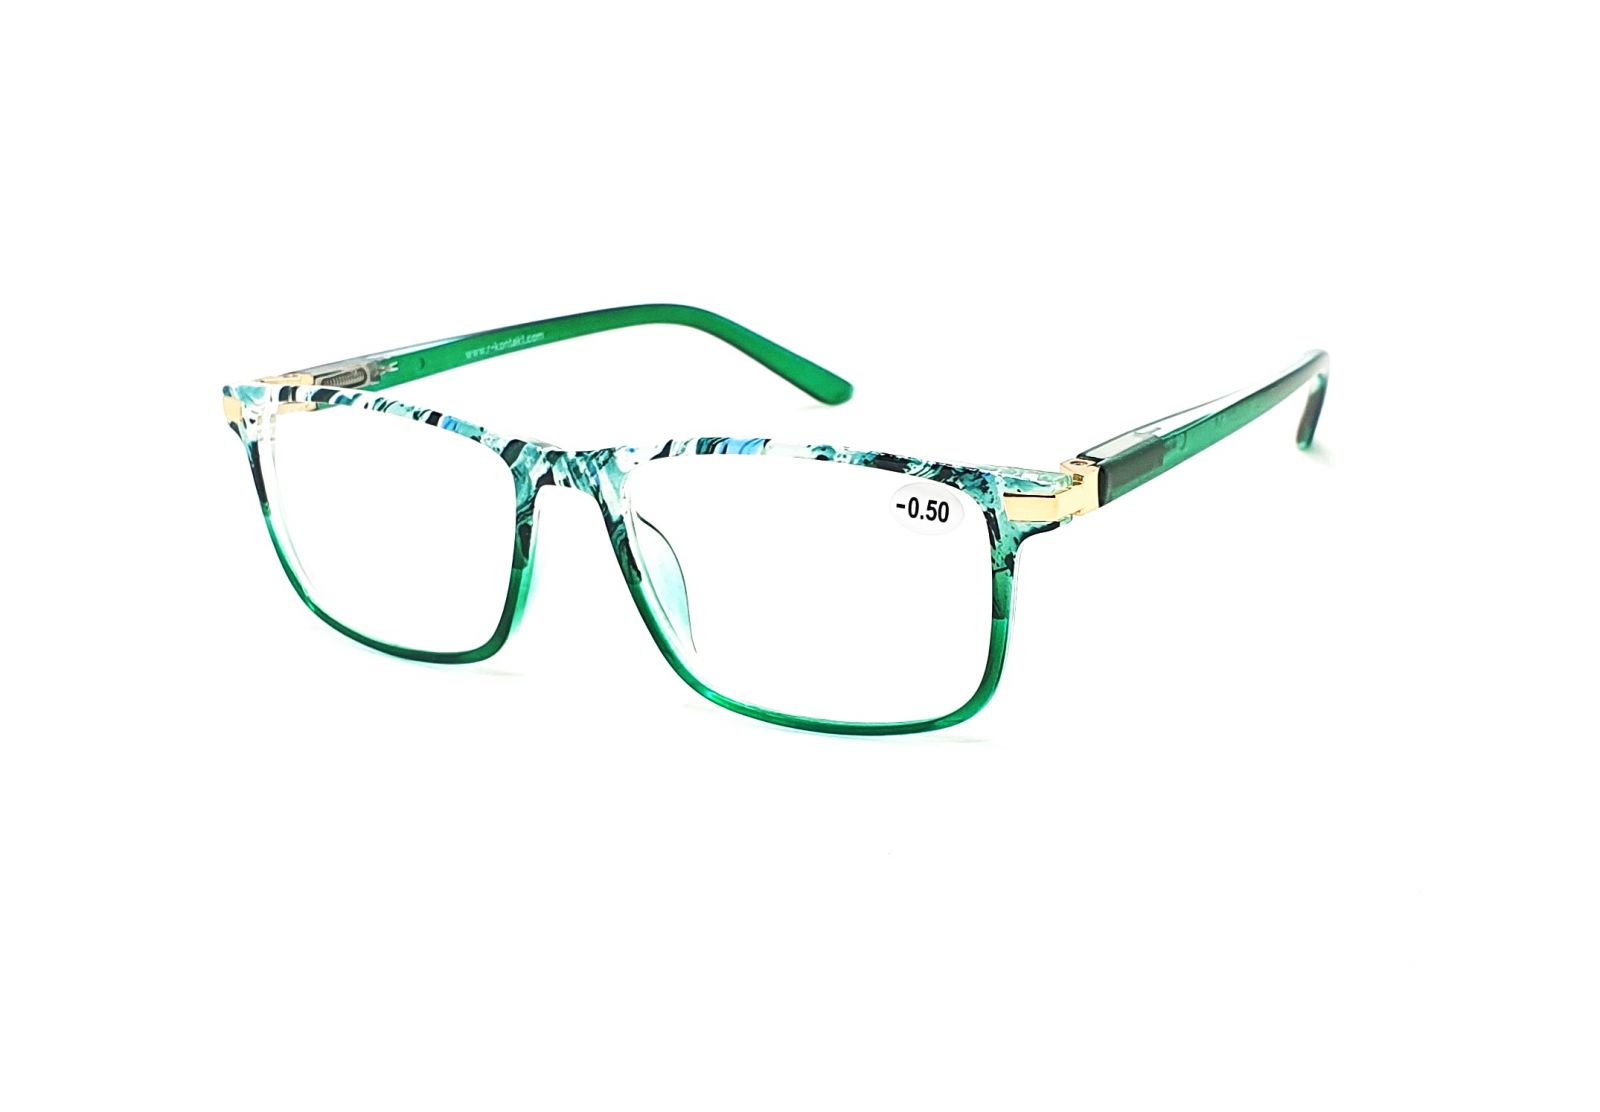 Dioptrické brýle V3075 / -0,50 green flex